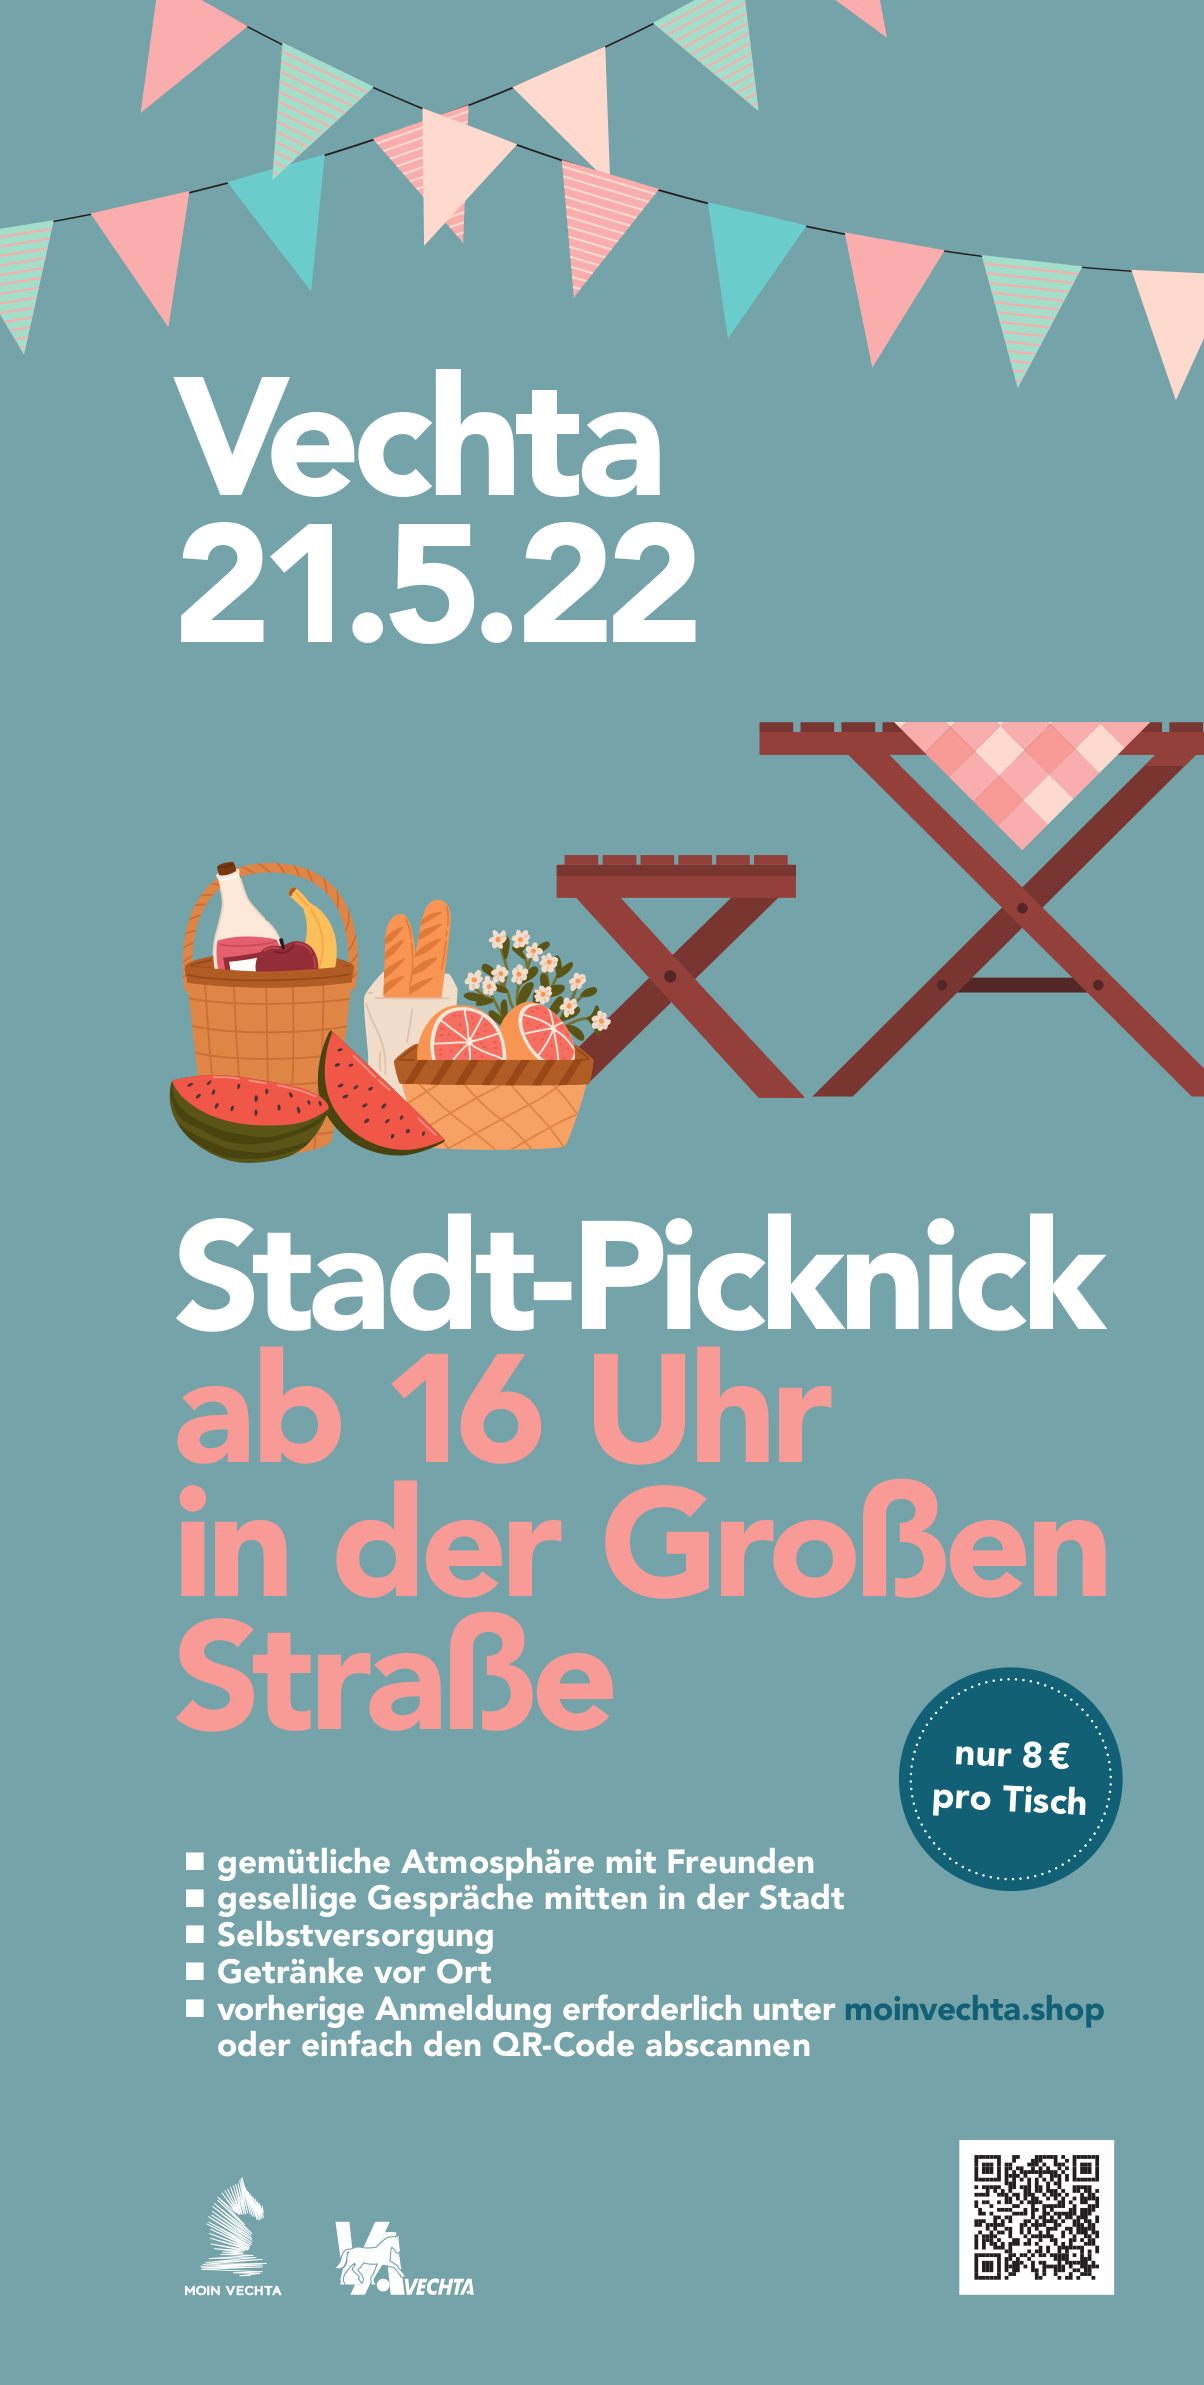 MOIN Vechta Stadtpicknick Plakat 300 x 600 mm 04-22 (1)